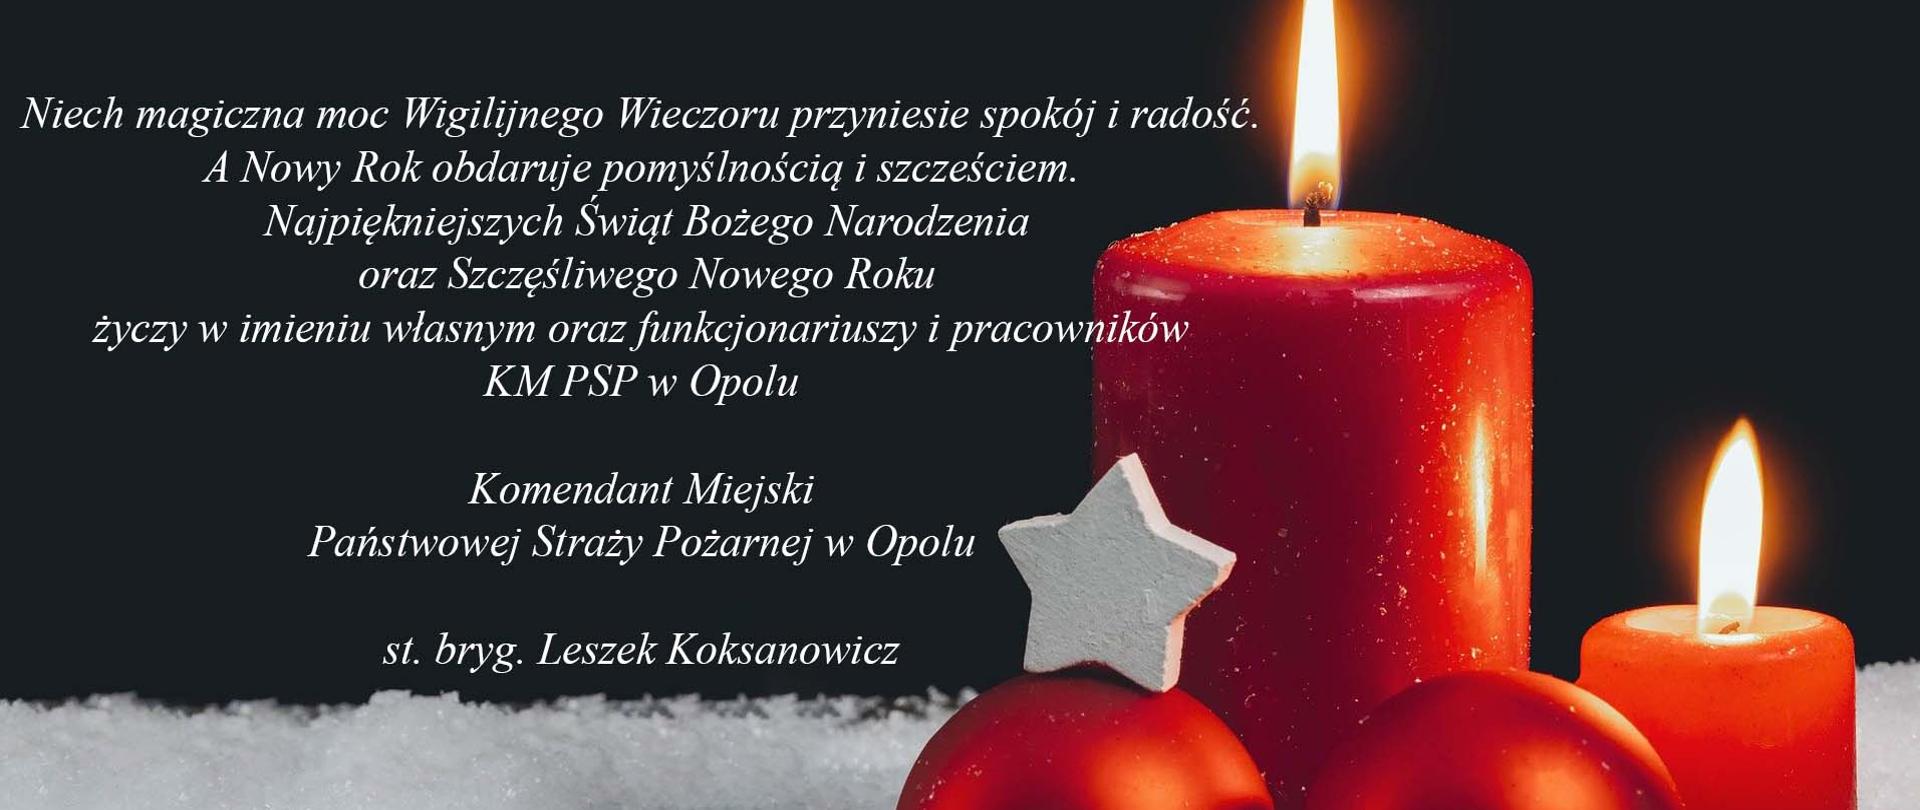 Życzenia świąteczne od pracowników KM PSP w Opolu